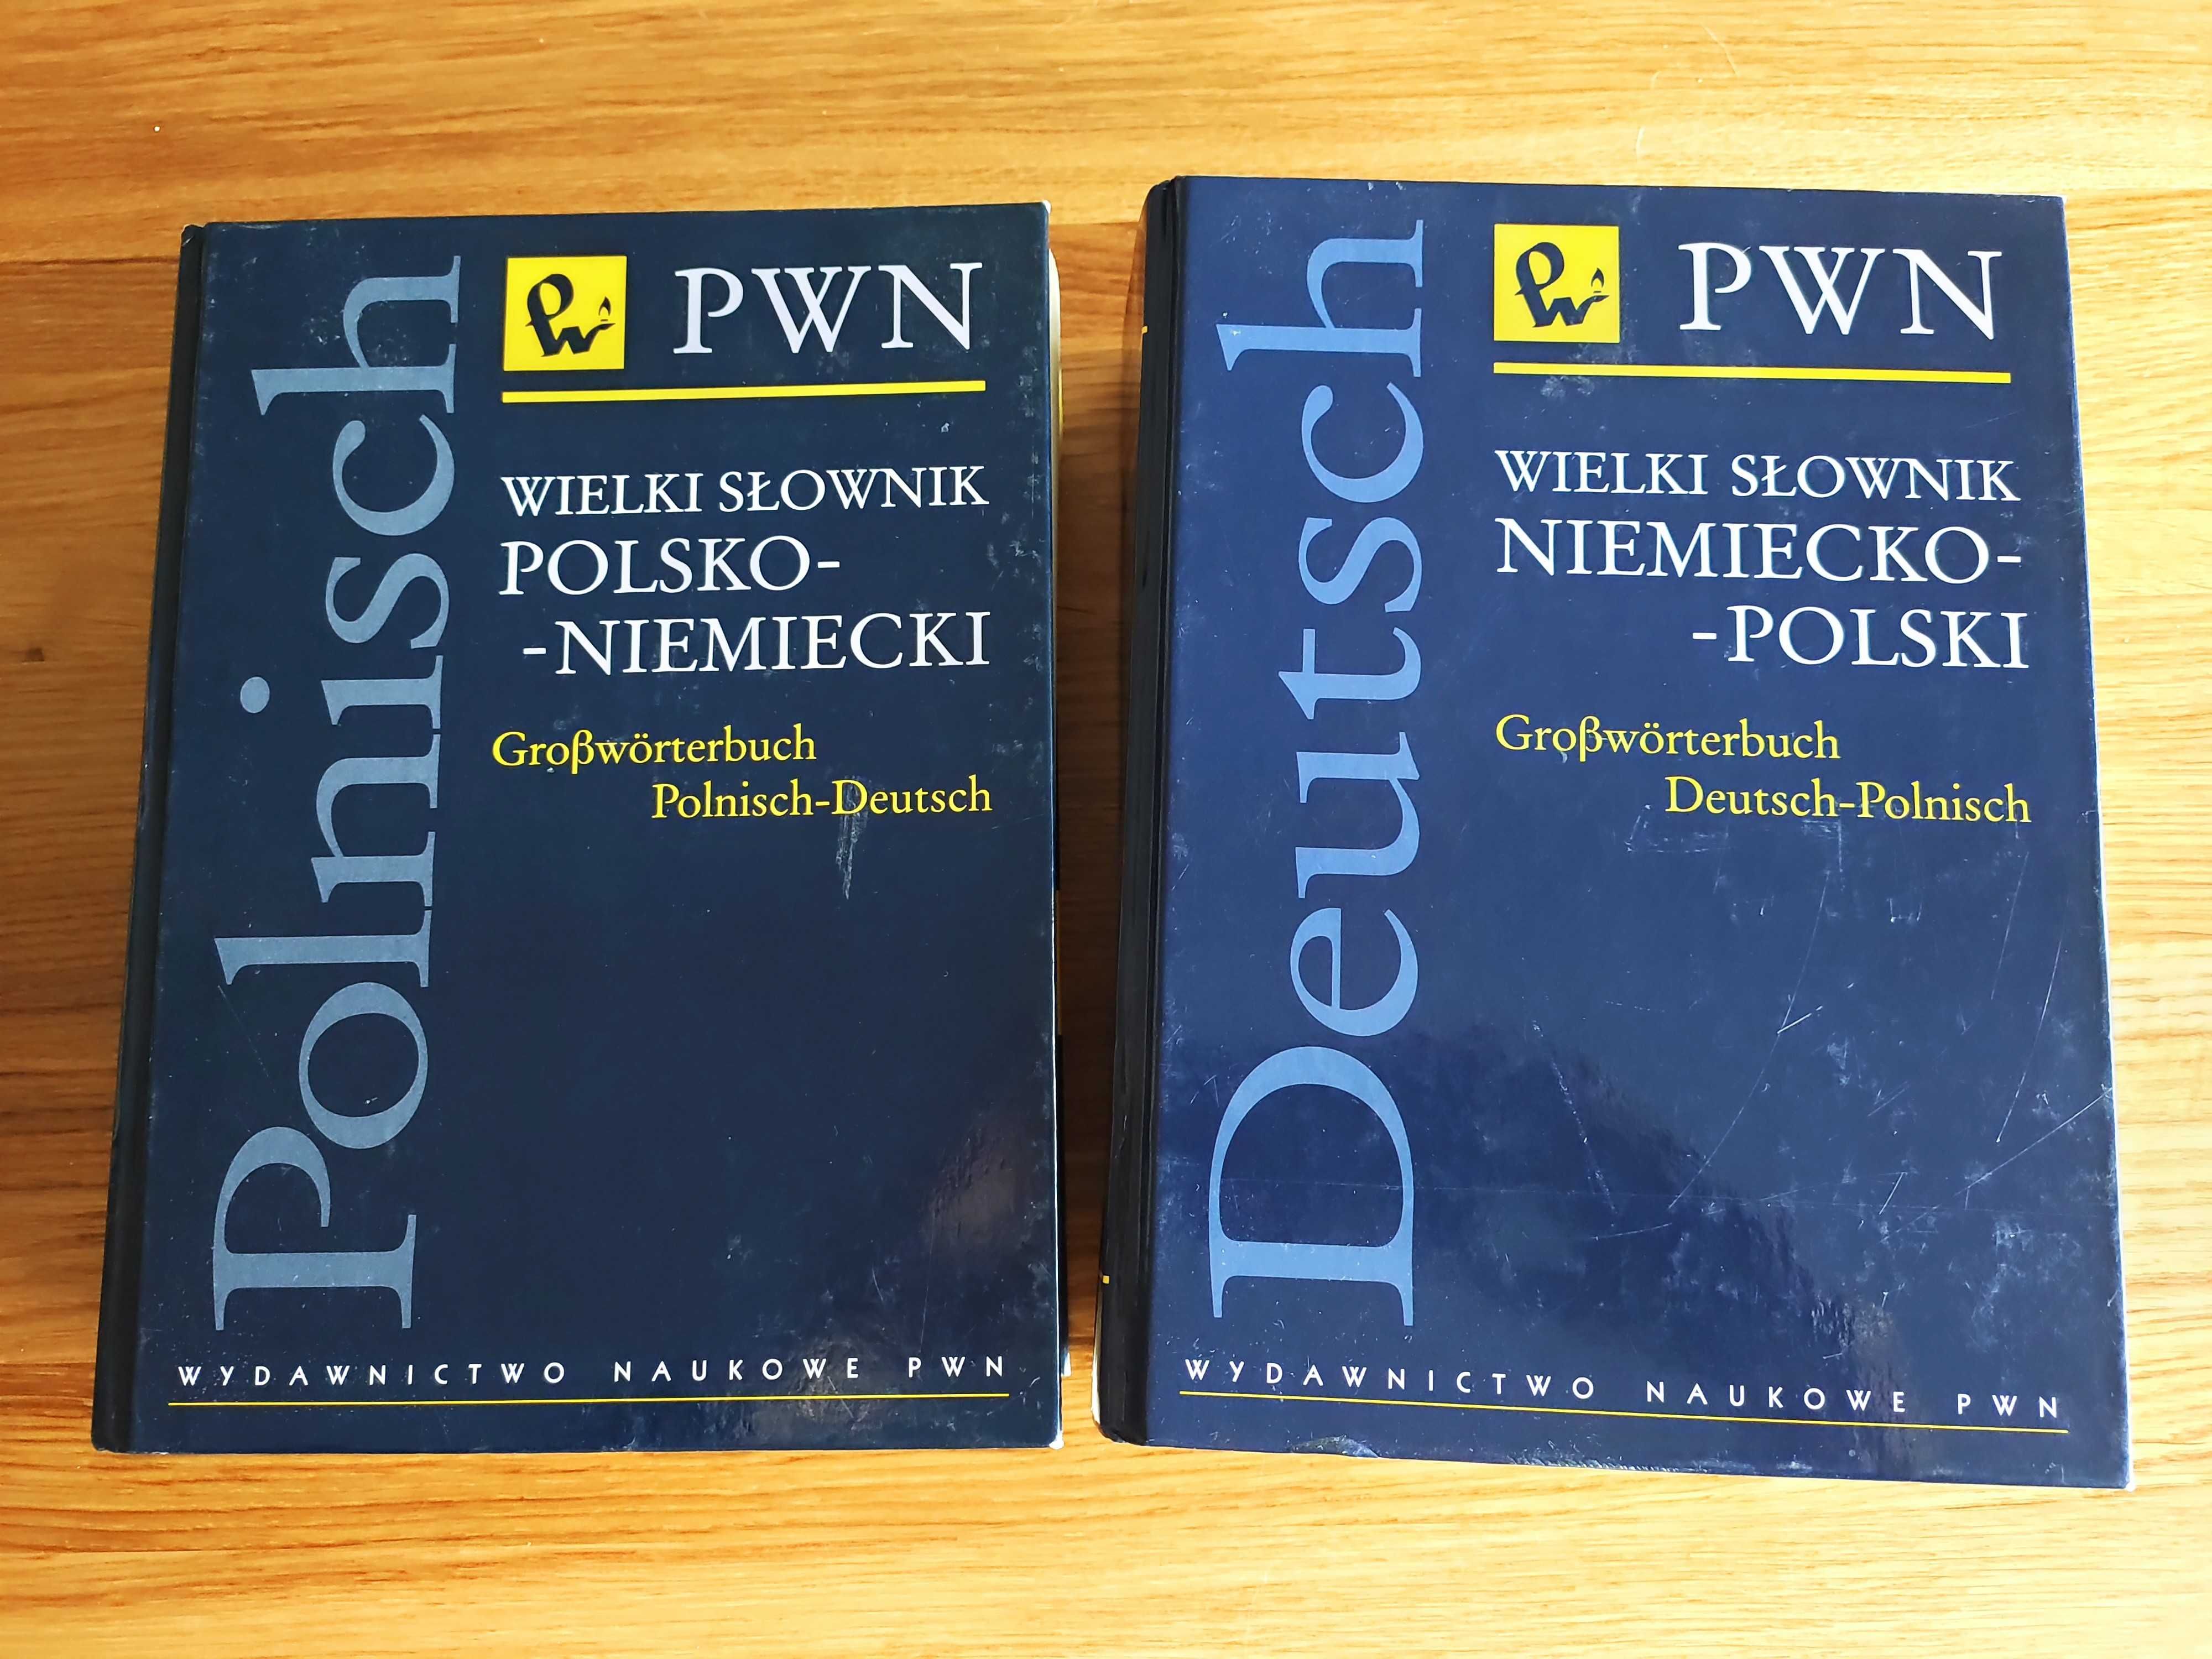 PWN Wielki słownik niemiecko-polski + polsko-niemiecki